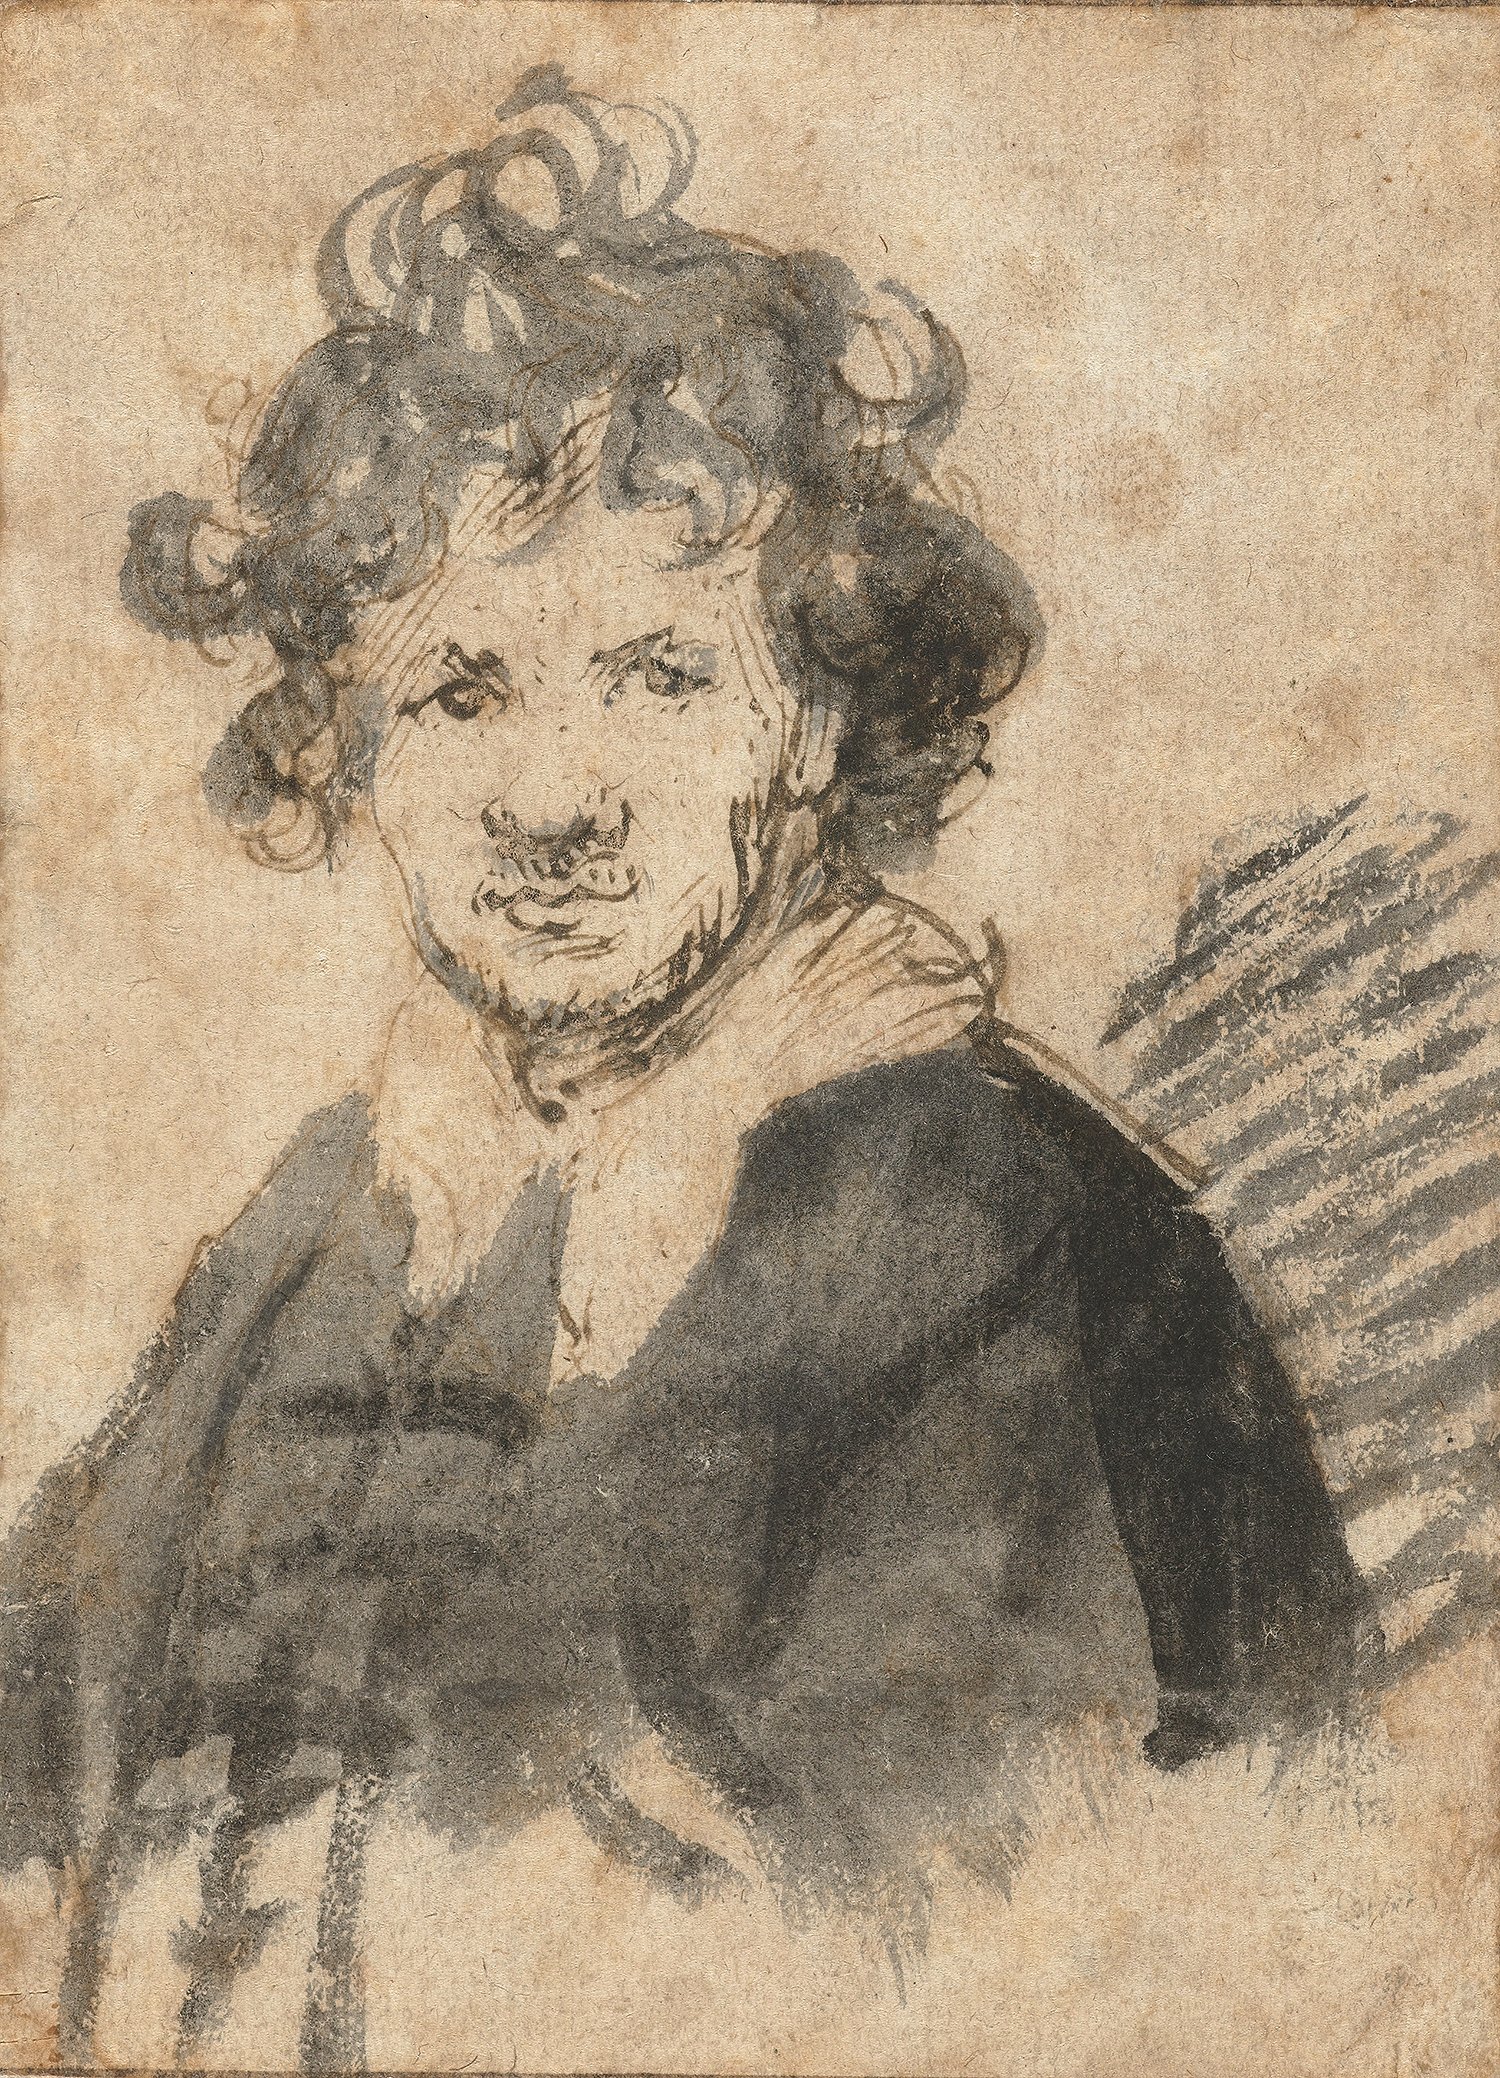 Rembrandt van Rijn (1606-1669), Self- Portrait, ca. 1629, Pen and brown ink and gray wash. Rijksmuseum, Amsterdam.